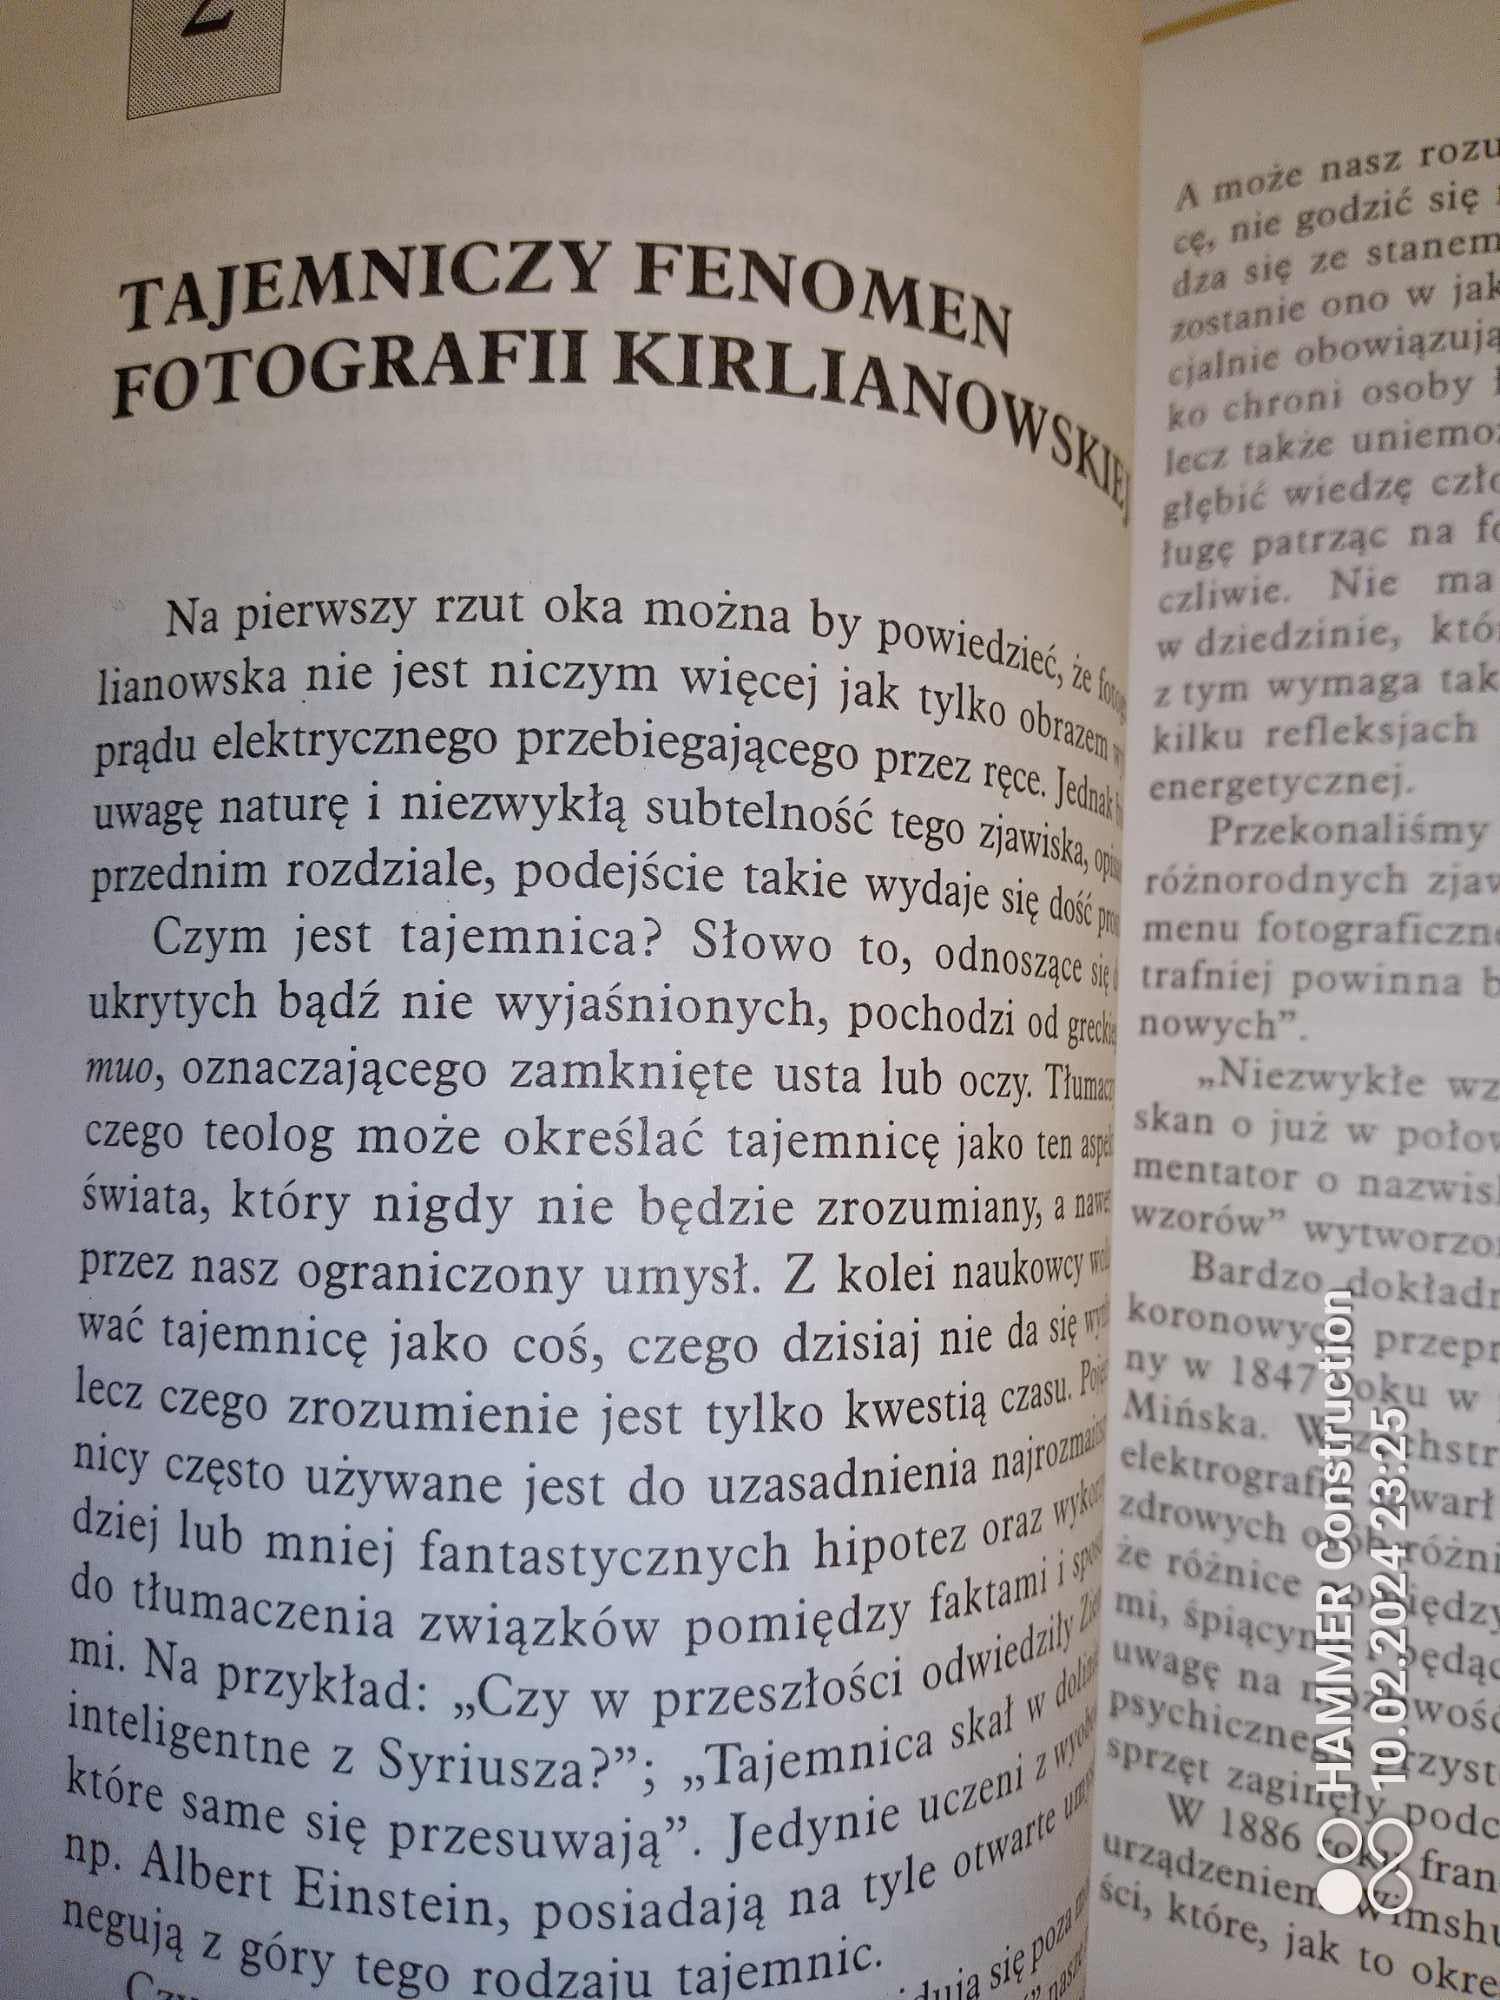 Niewdzialny byt fenomen fotografi kirlianowskiej - B.Snellgrove 1997